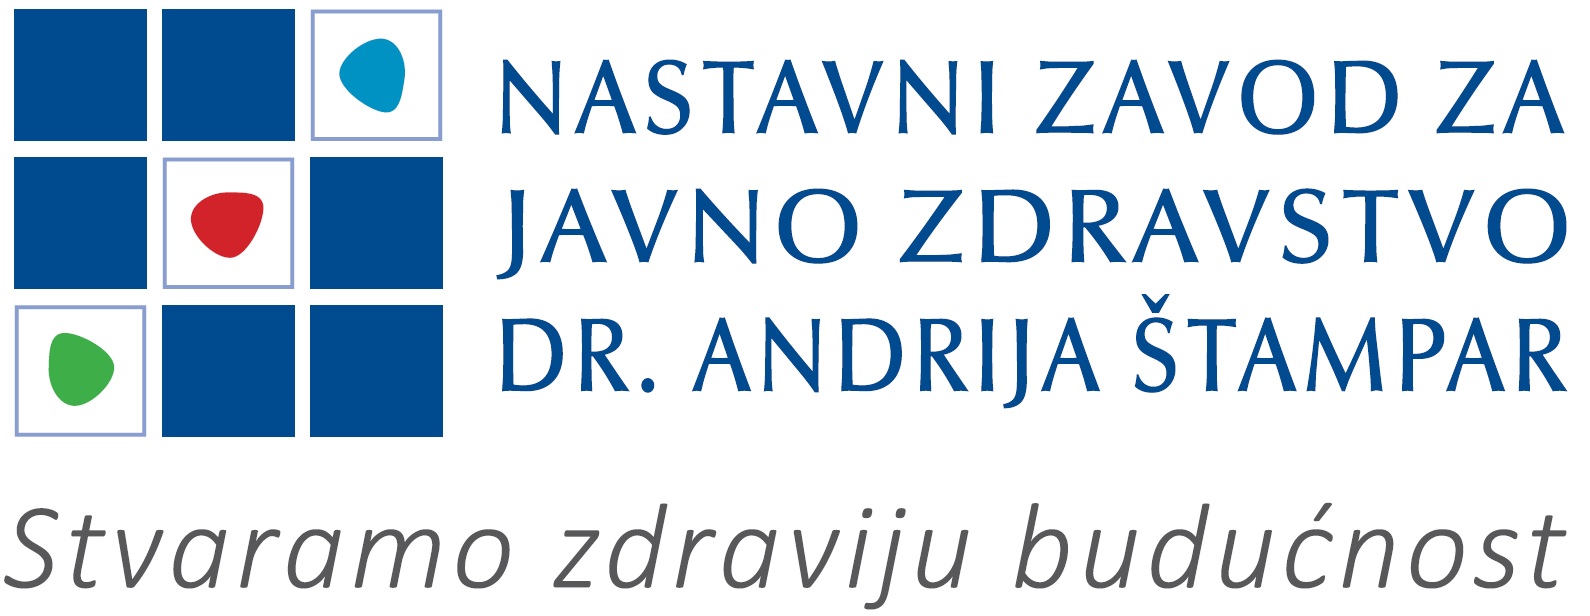 Nastavni zavod za javno zdravstvo “Dr. Andrija Štampar”